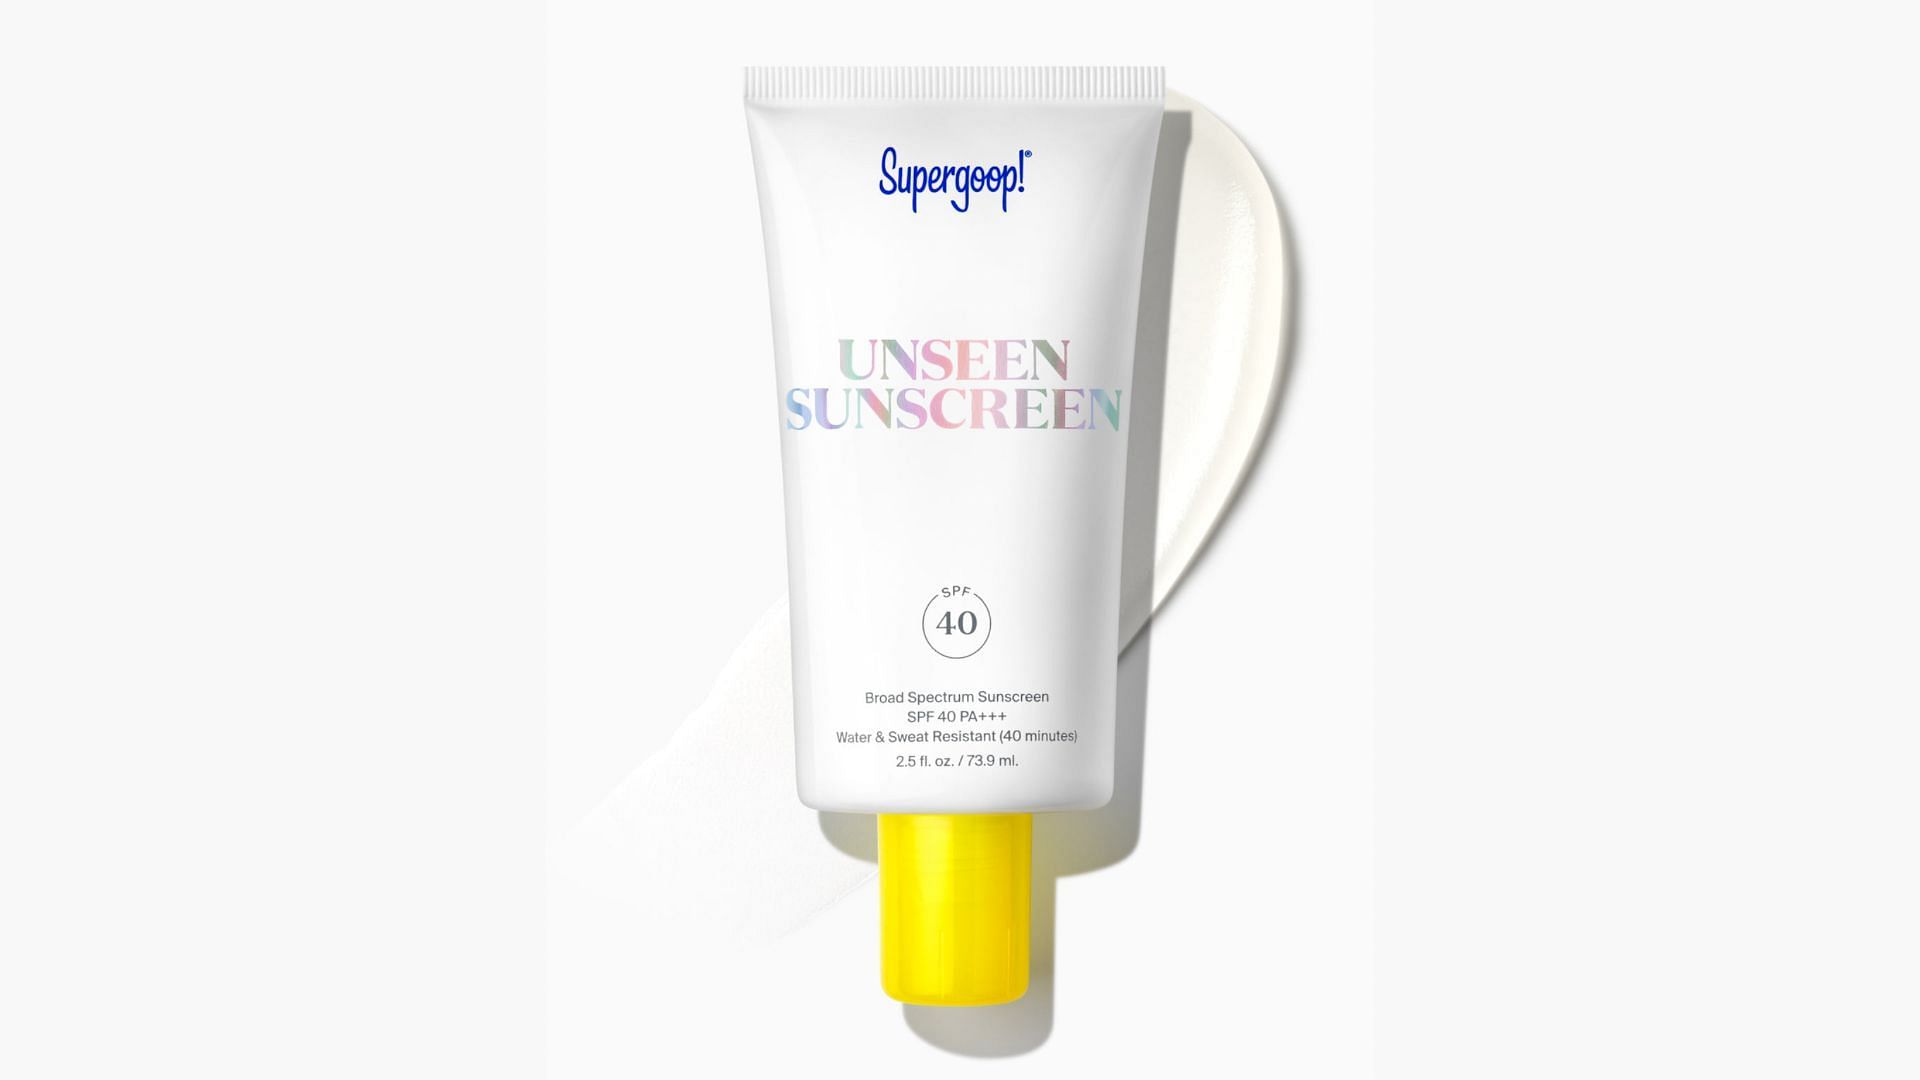 Supergoop Unseen Sunscreen (Image via Supergoop)